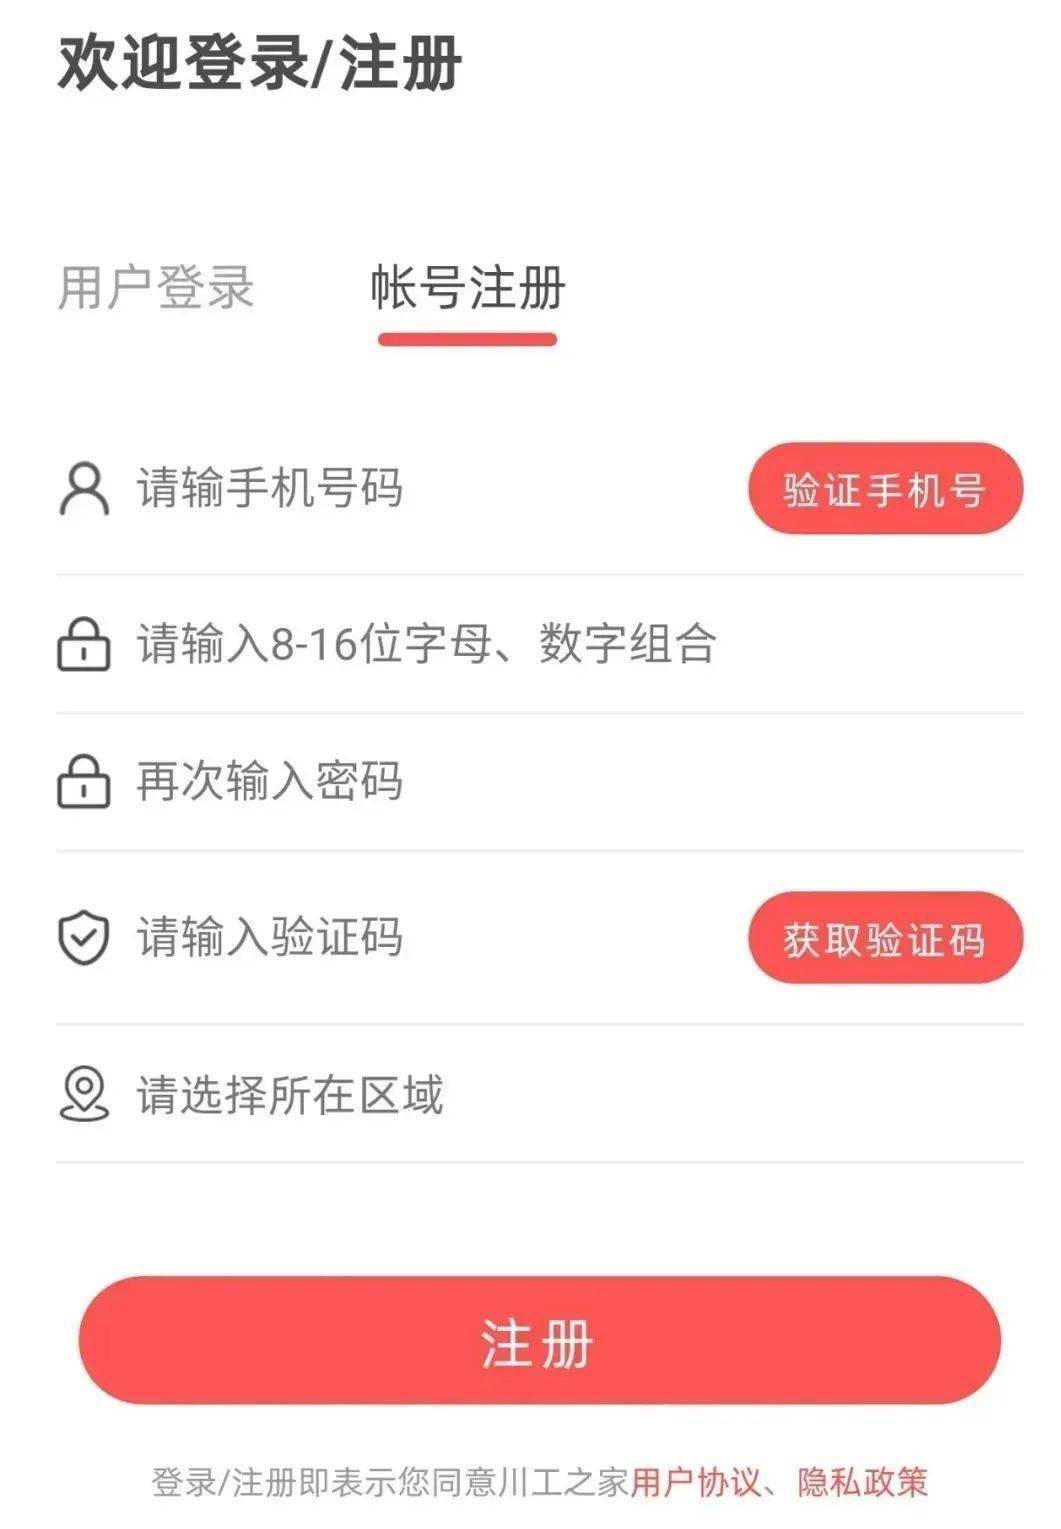 什邡市总工会推广使用四川省工会网上工作平台